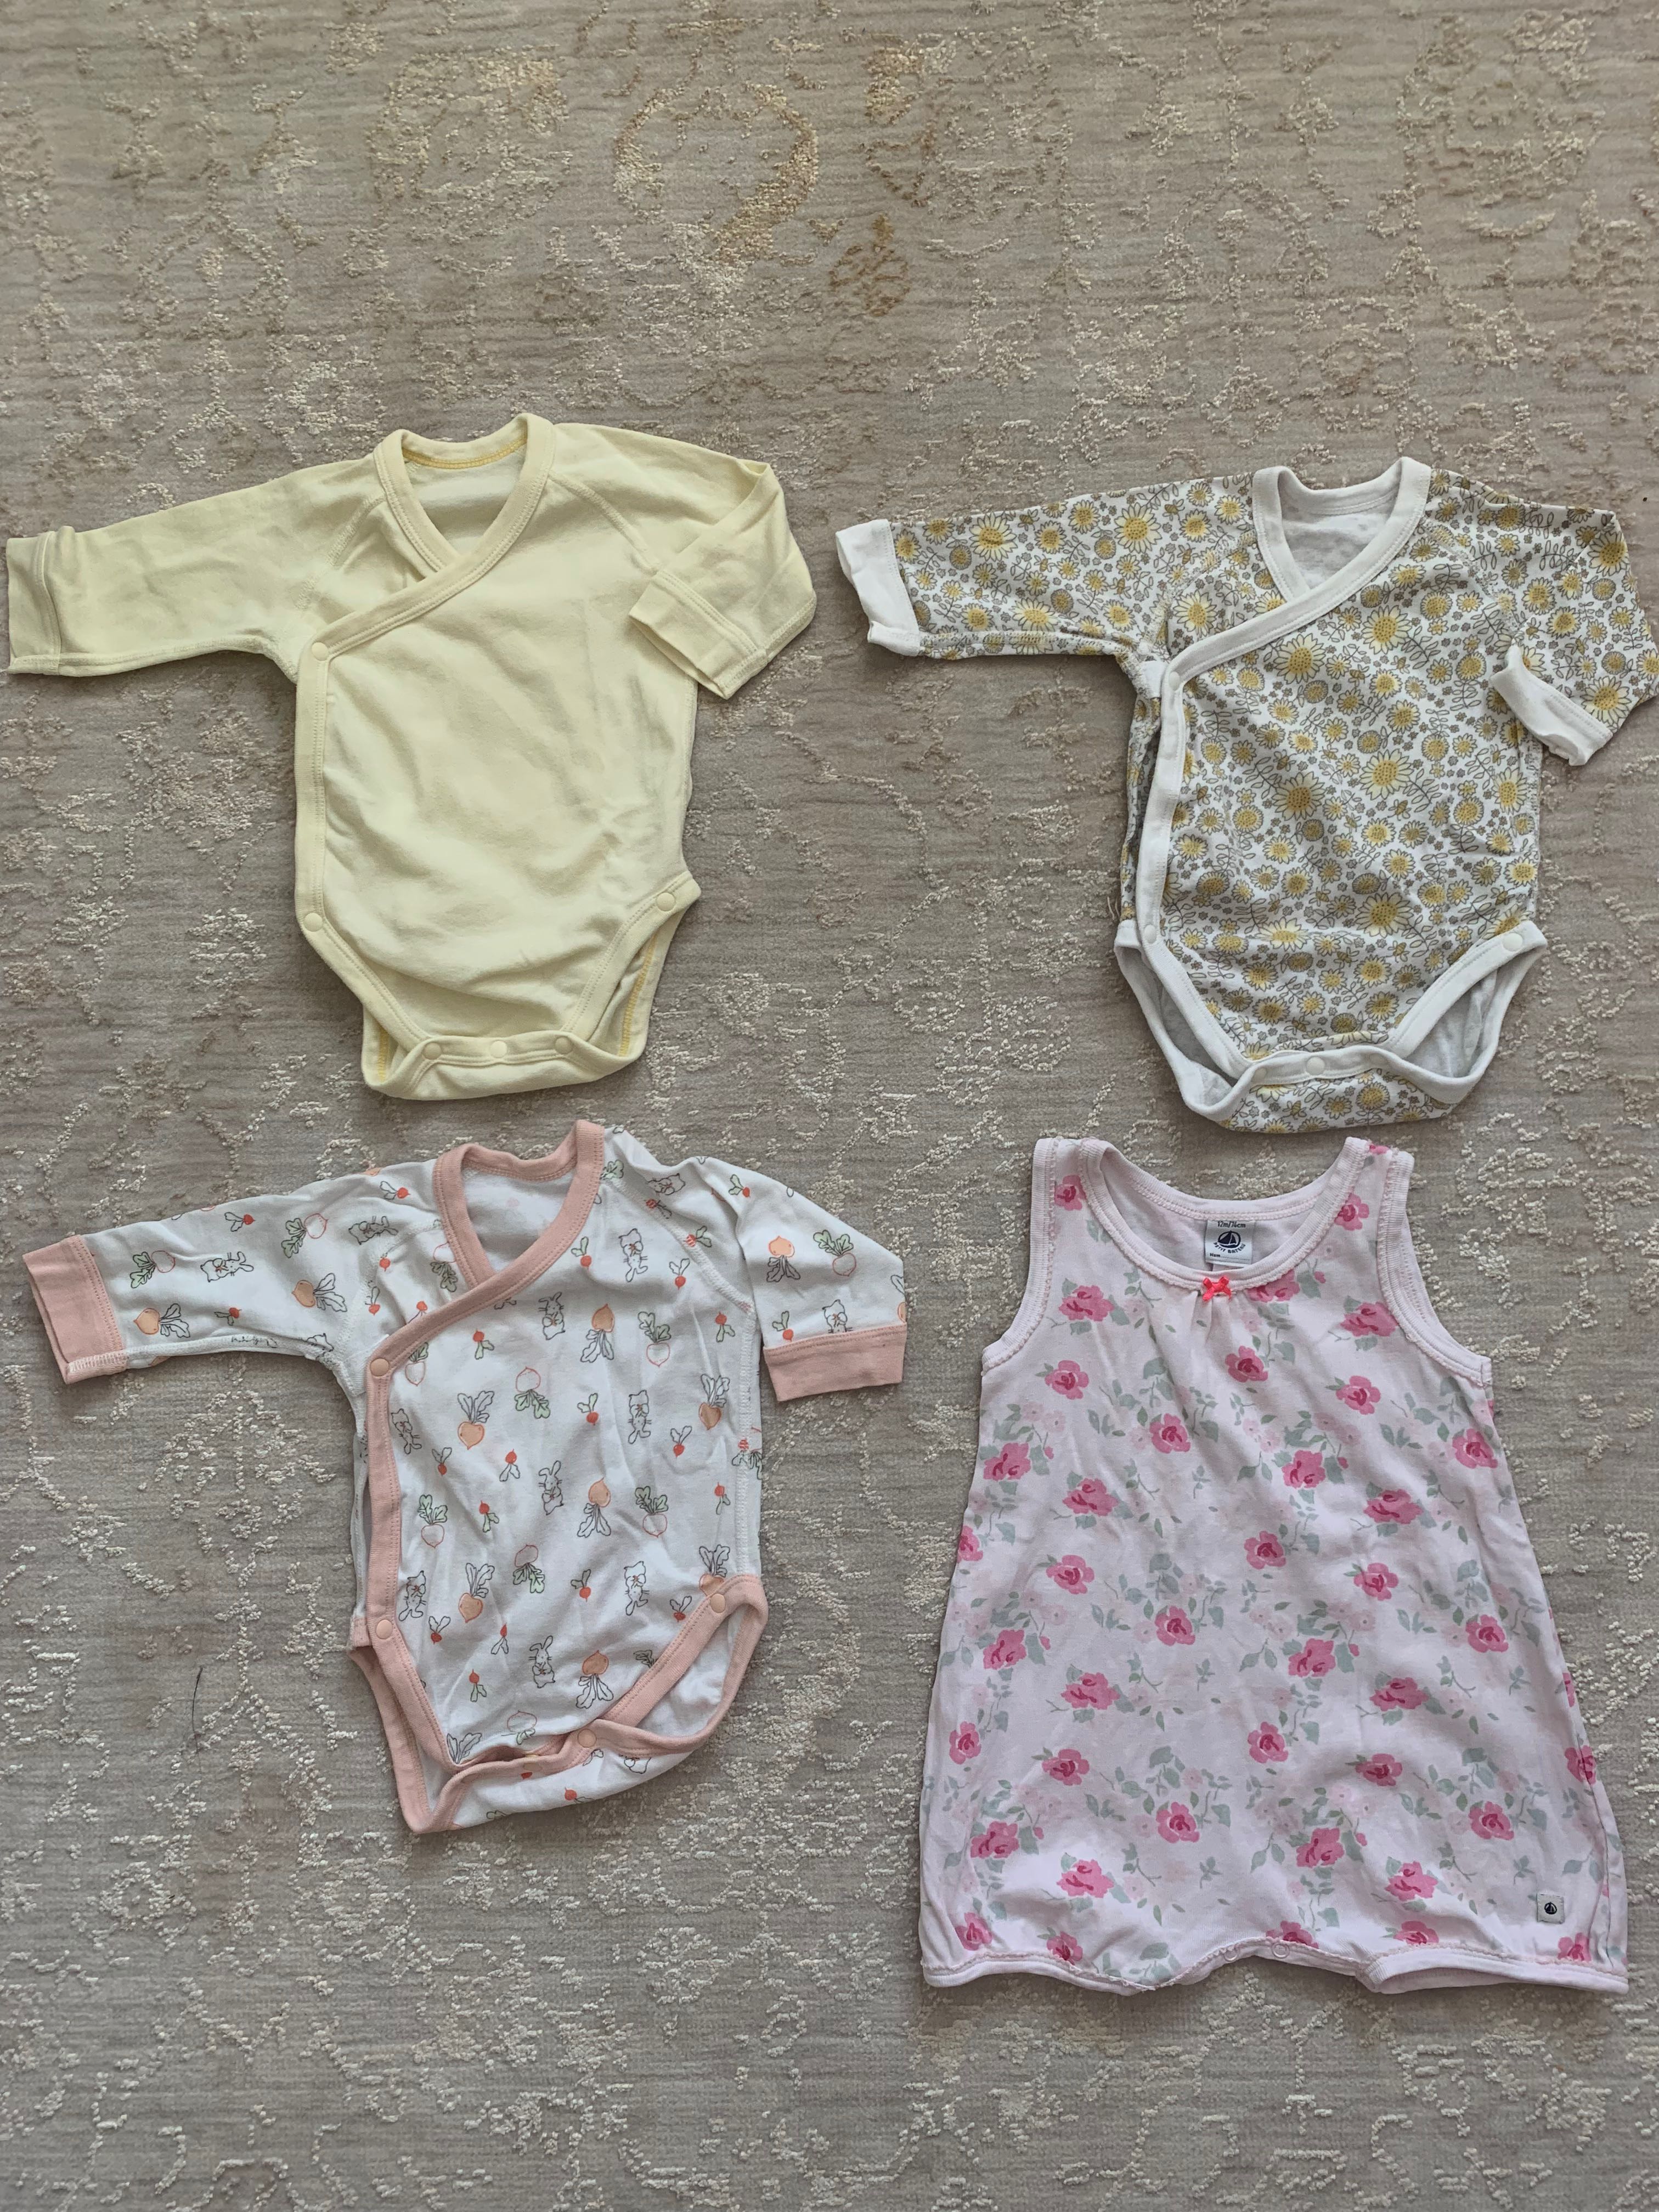 uniqlo baby clothes japan